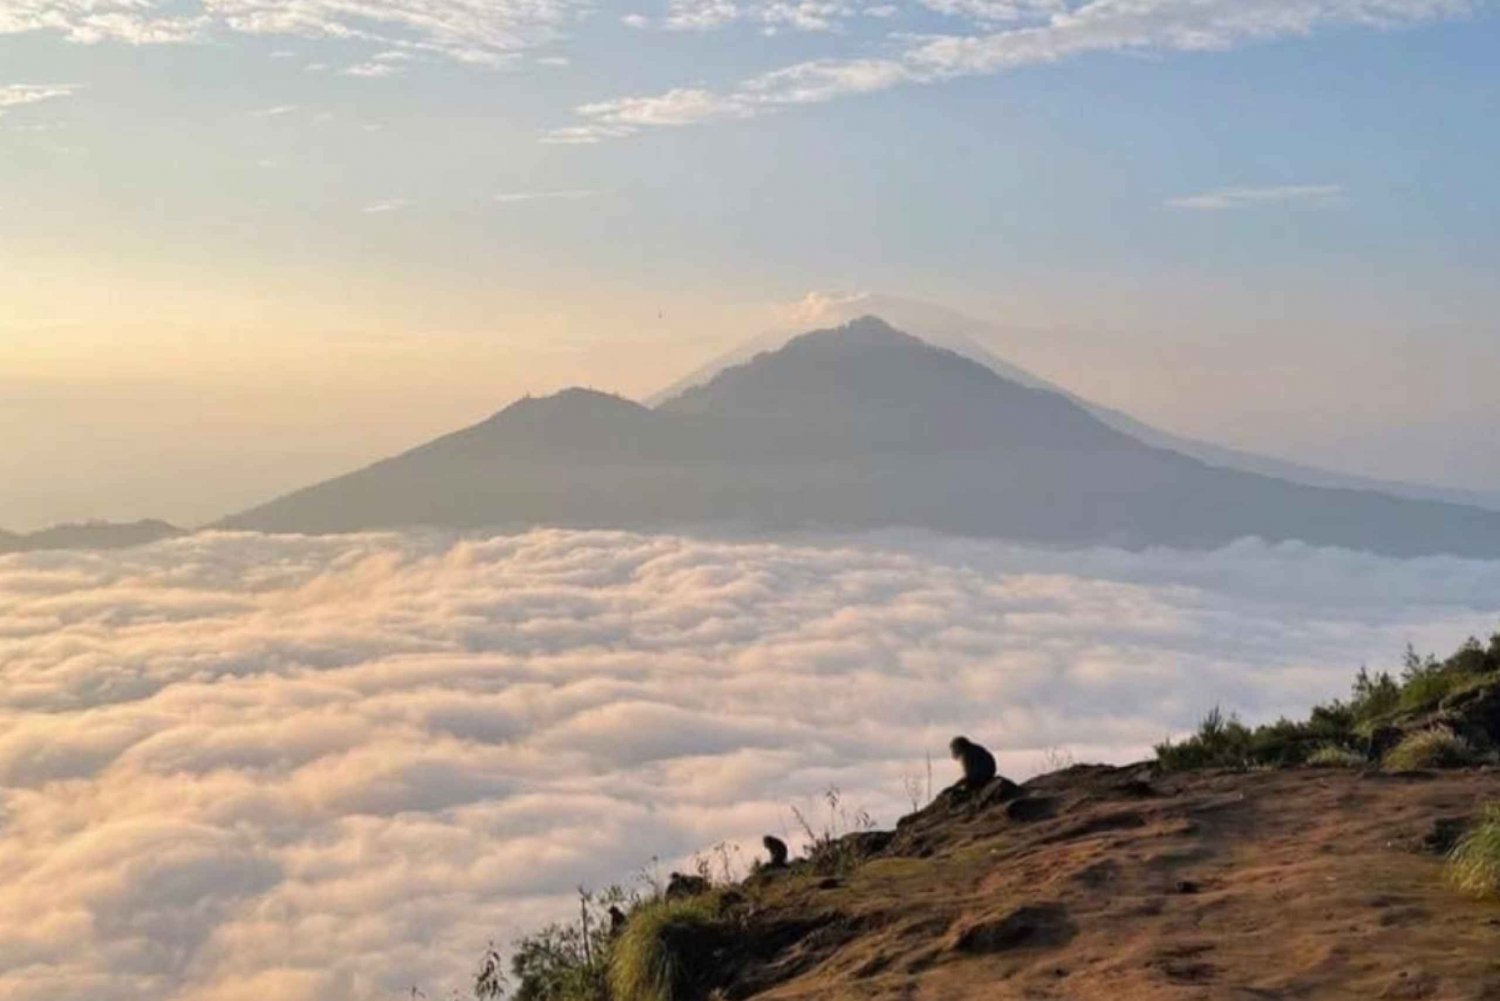 Zrelaksuj się wspinając się na górę Batur